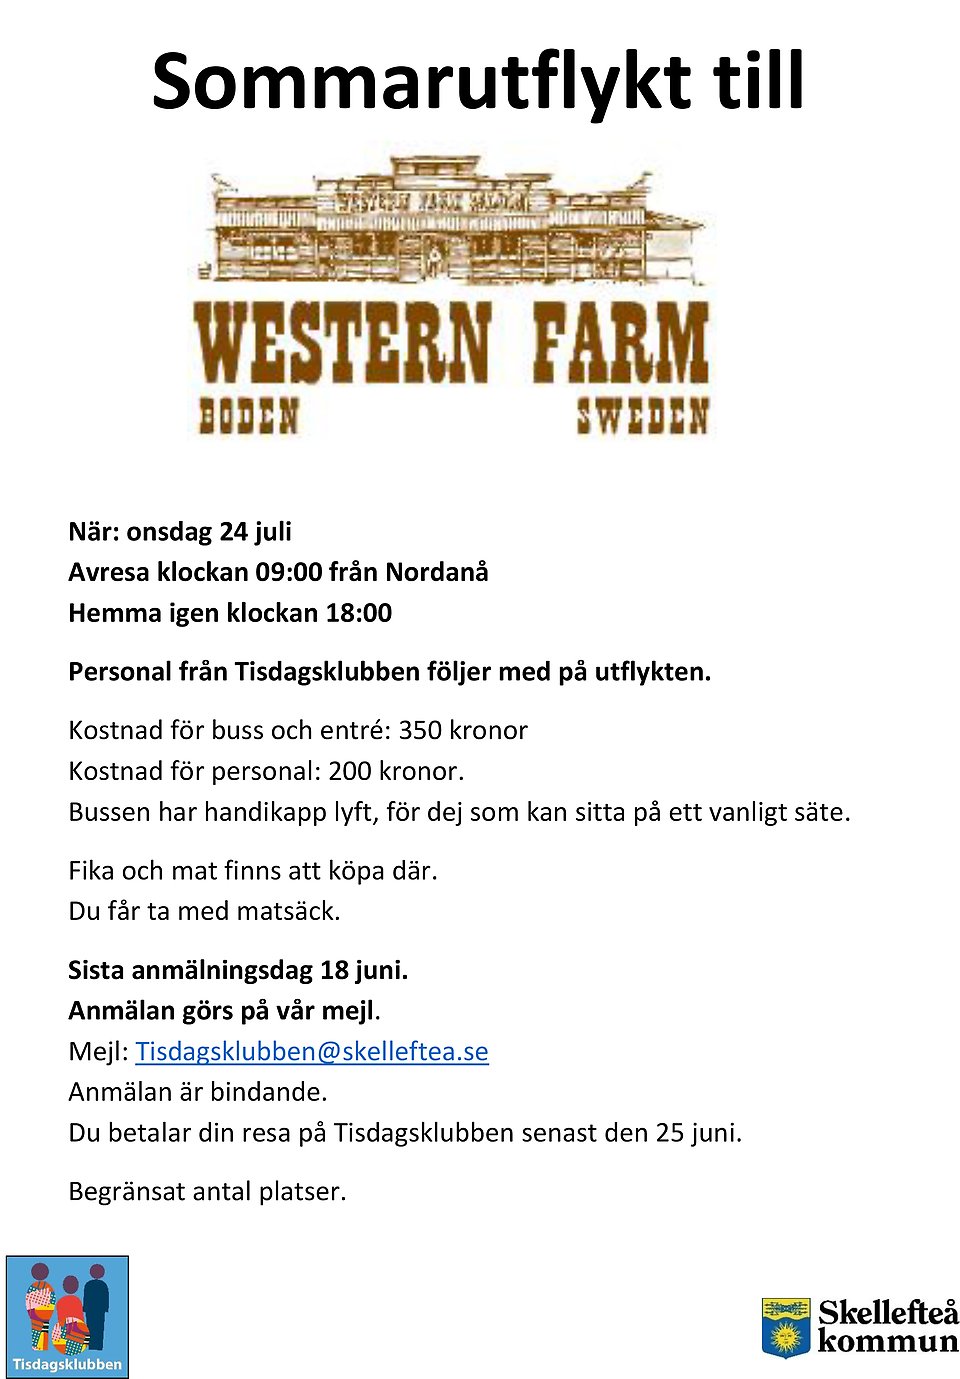 Western farm